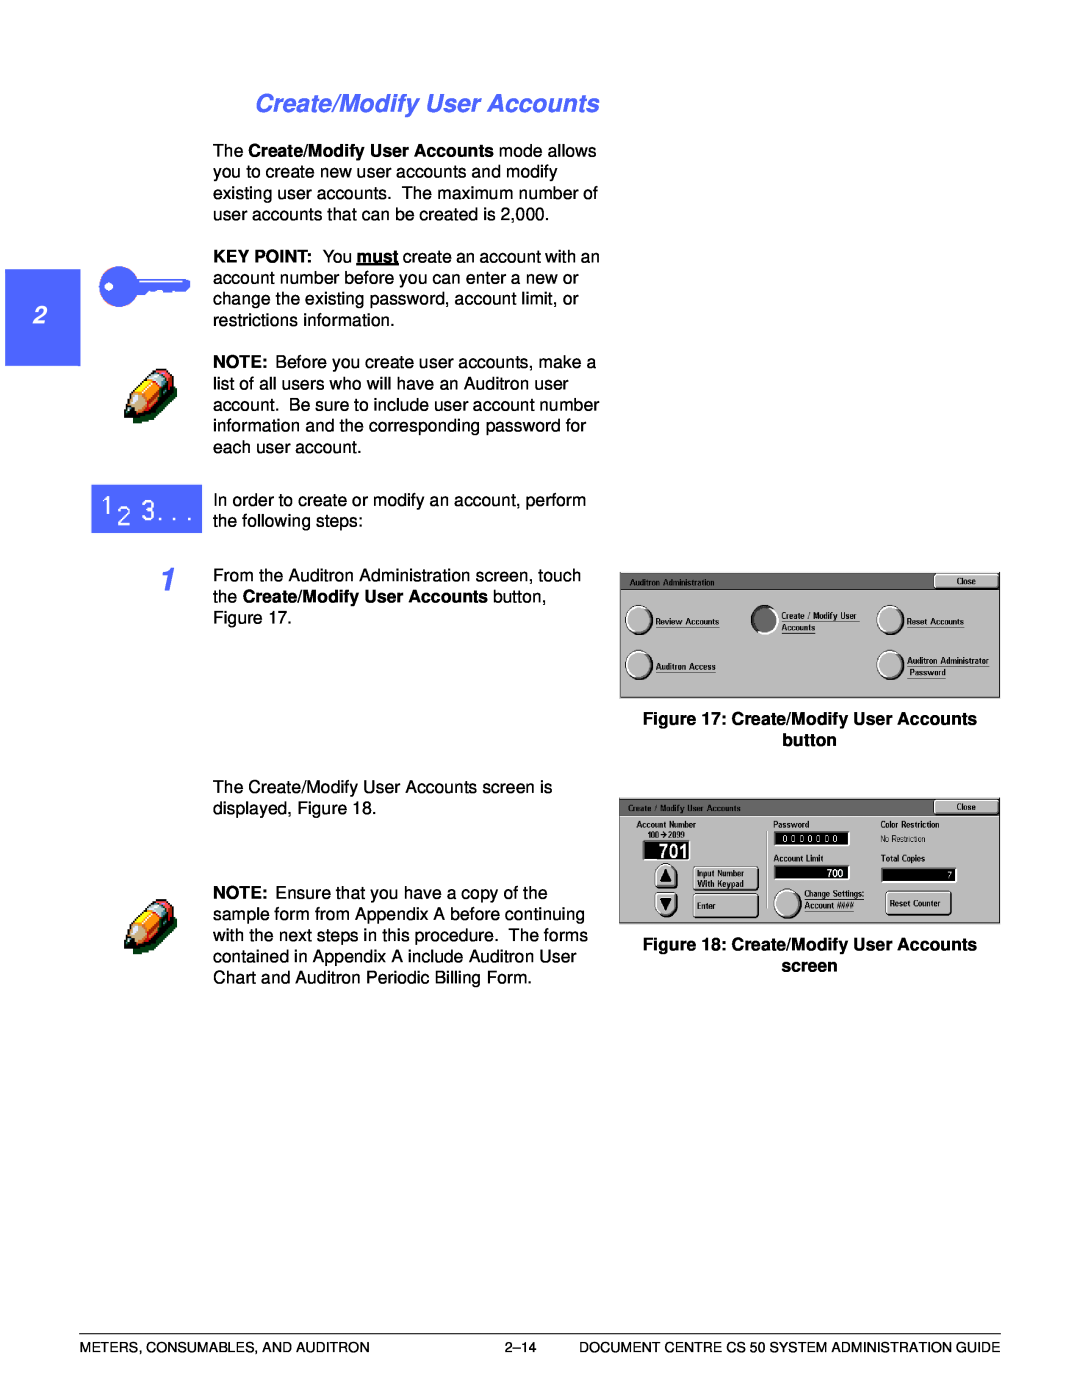 Xerox 50 manual 1 22 4, 5 6 7, The Create/Modify User Accounts mode allows, the Create/Modify User Accounts button 